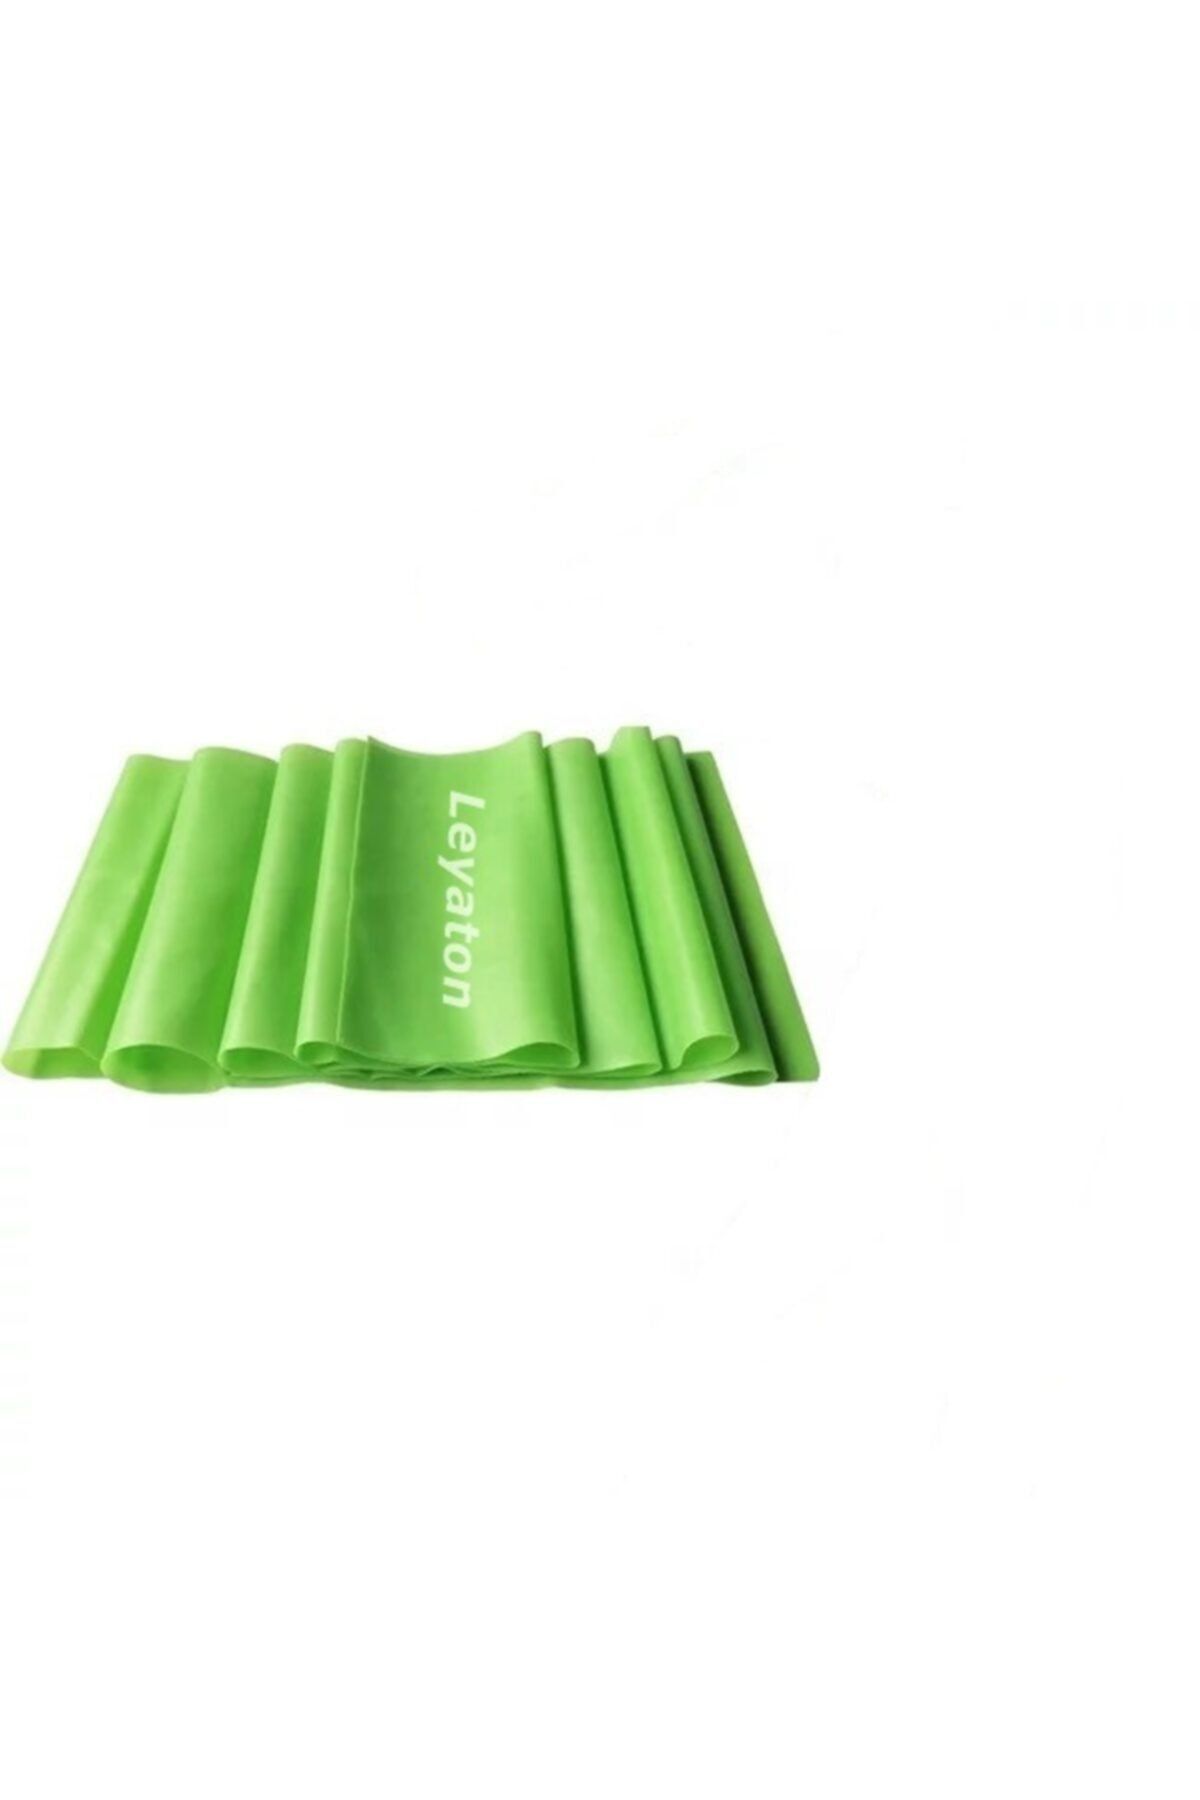 Leyaton Yeşil Pilates Bandı Jimnastik Plates Lastiği 120x15 cm Egzersiz Aerobik Bant 1 Adet